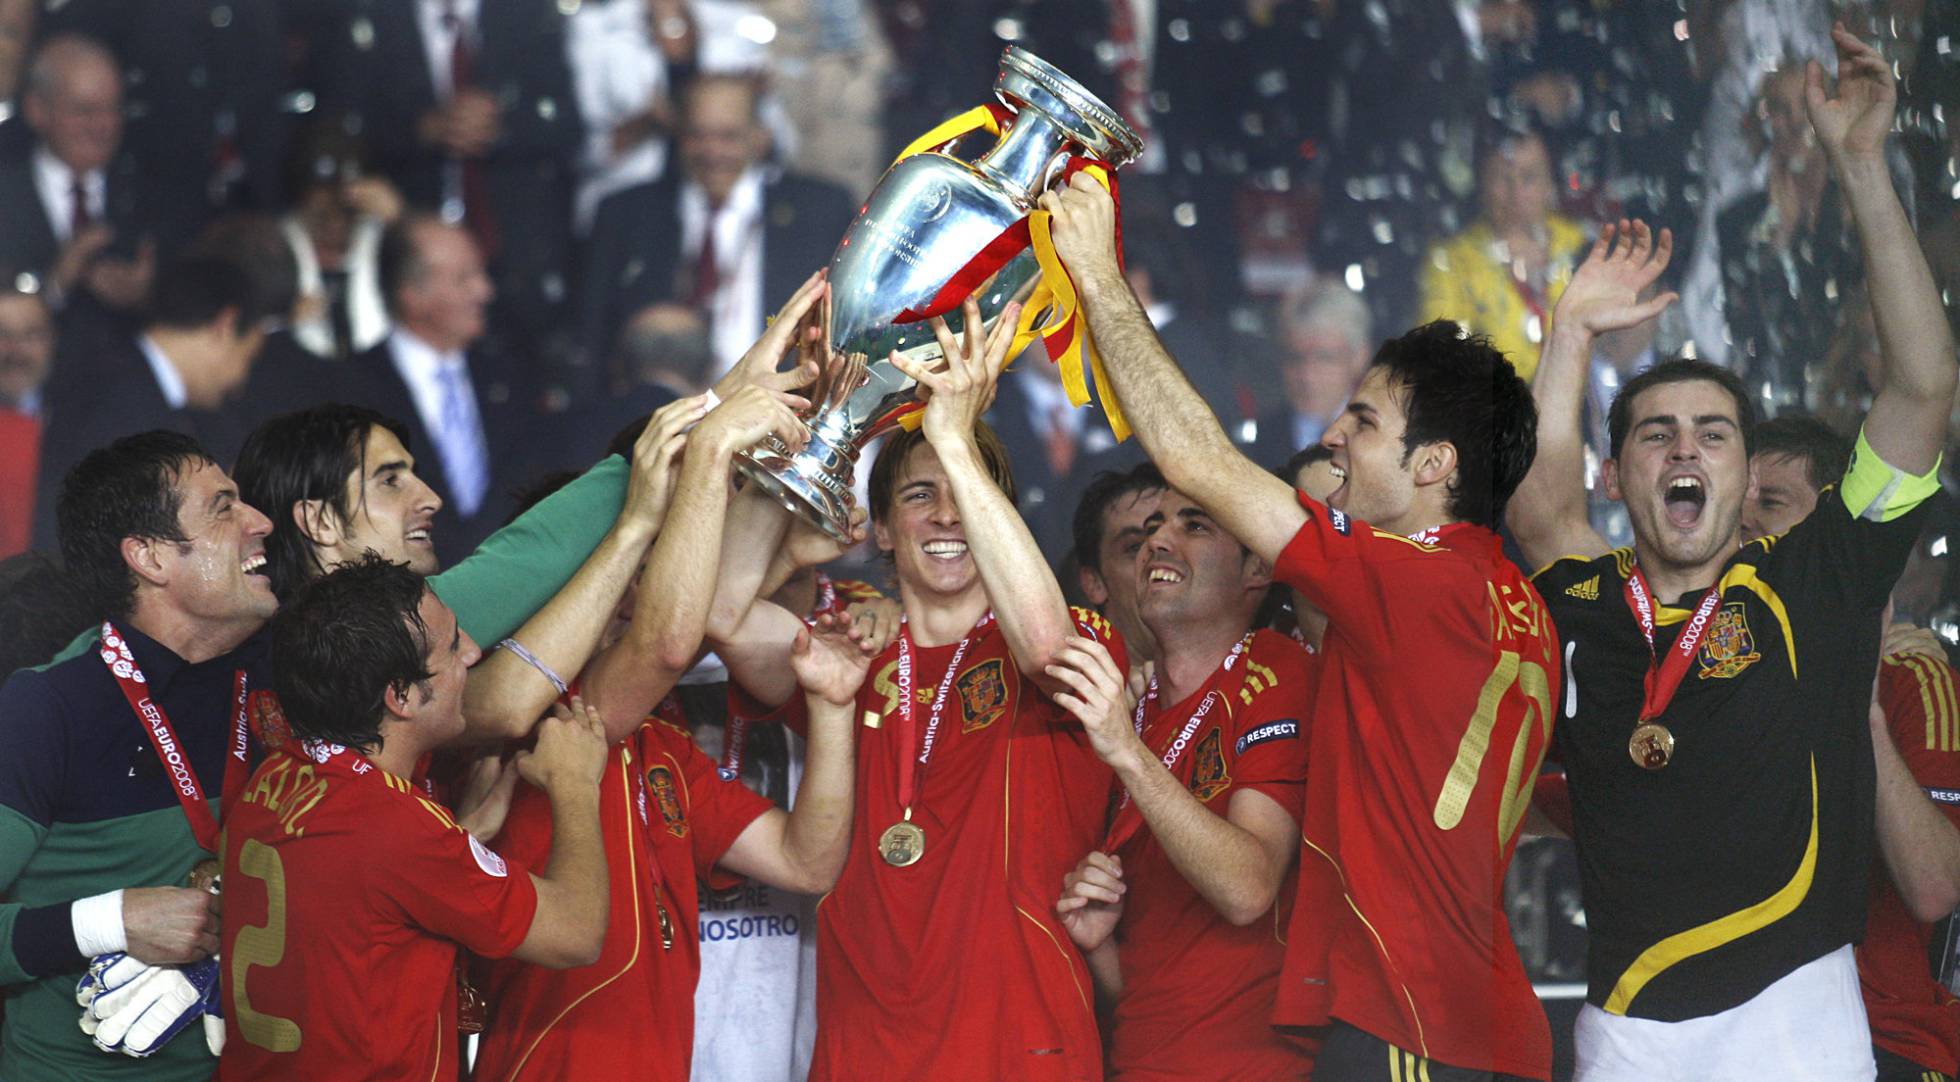 Tortuga Flecha Vaca Fotos: 10 años de la victoria de la selección española en la Eurocopa 2008  | Deportes | EL PAÍS